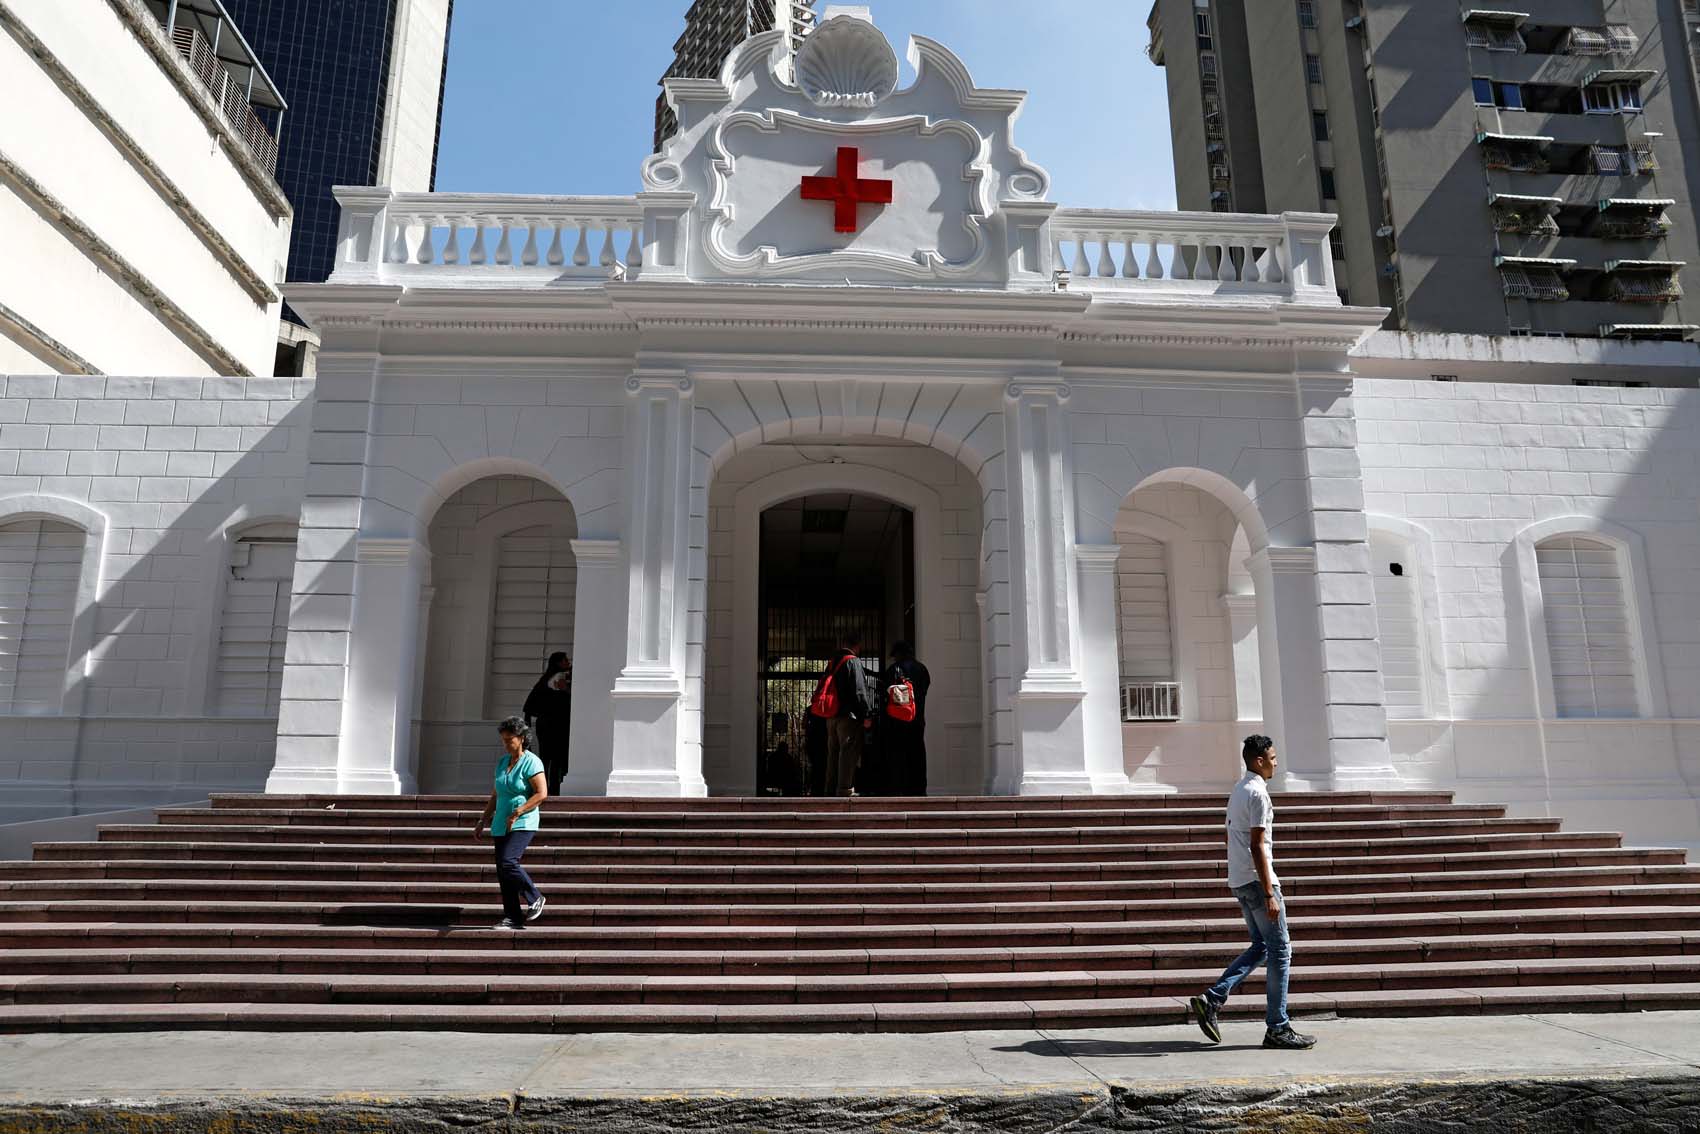 La Cruz Roja se ofrece para distribuir la ayuda humanitaria en Venezuela (Video)